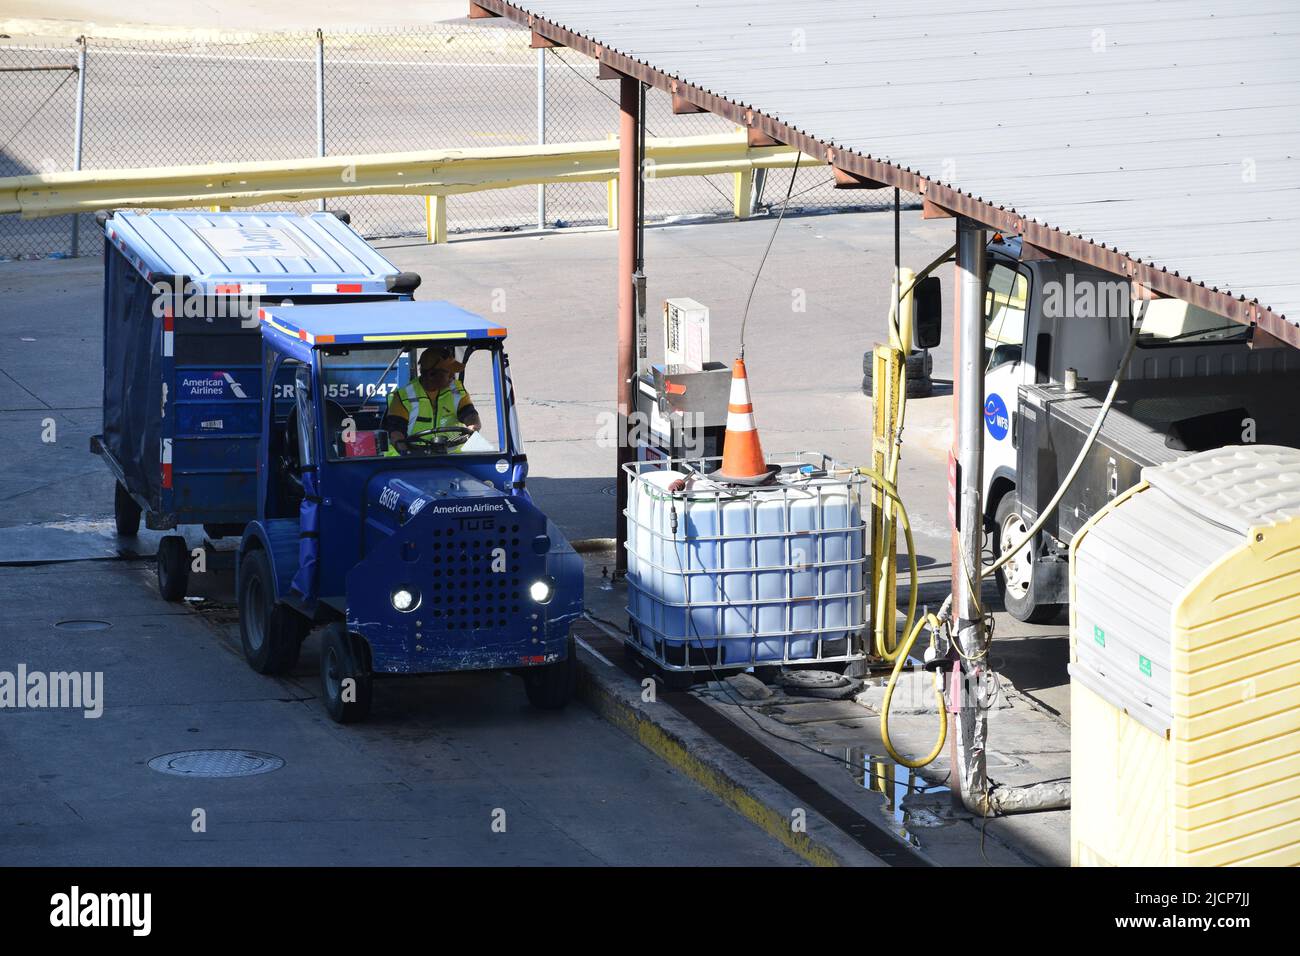 Ein Mitarbeiter von American Airlines, der sich auf dem internationalen Flughafen Dallas-Fort Worth (DFW Airport) darauf vorbereitet, seinen Traktor mit Gas zu füllen Stockfoto